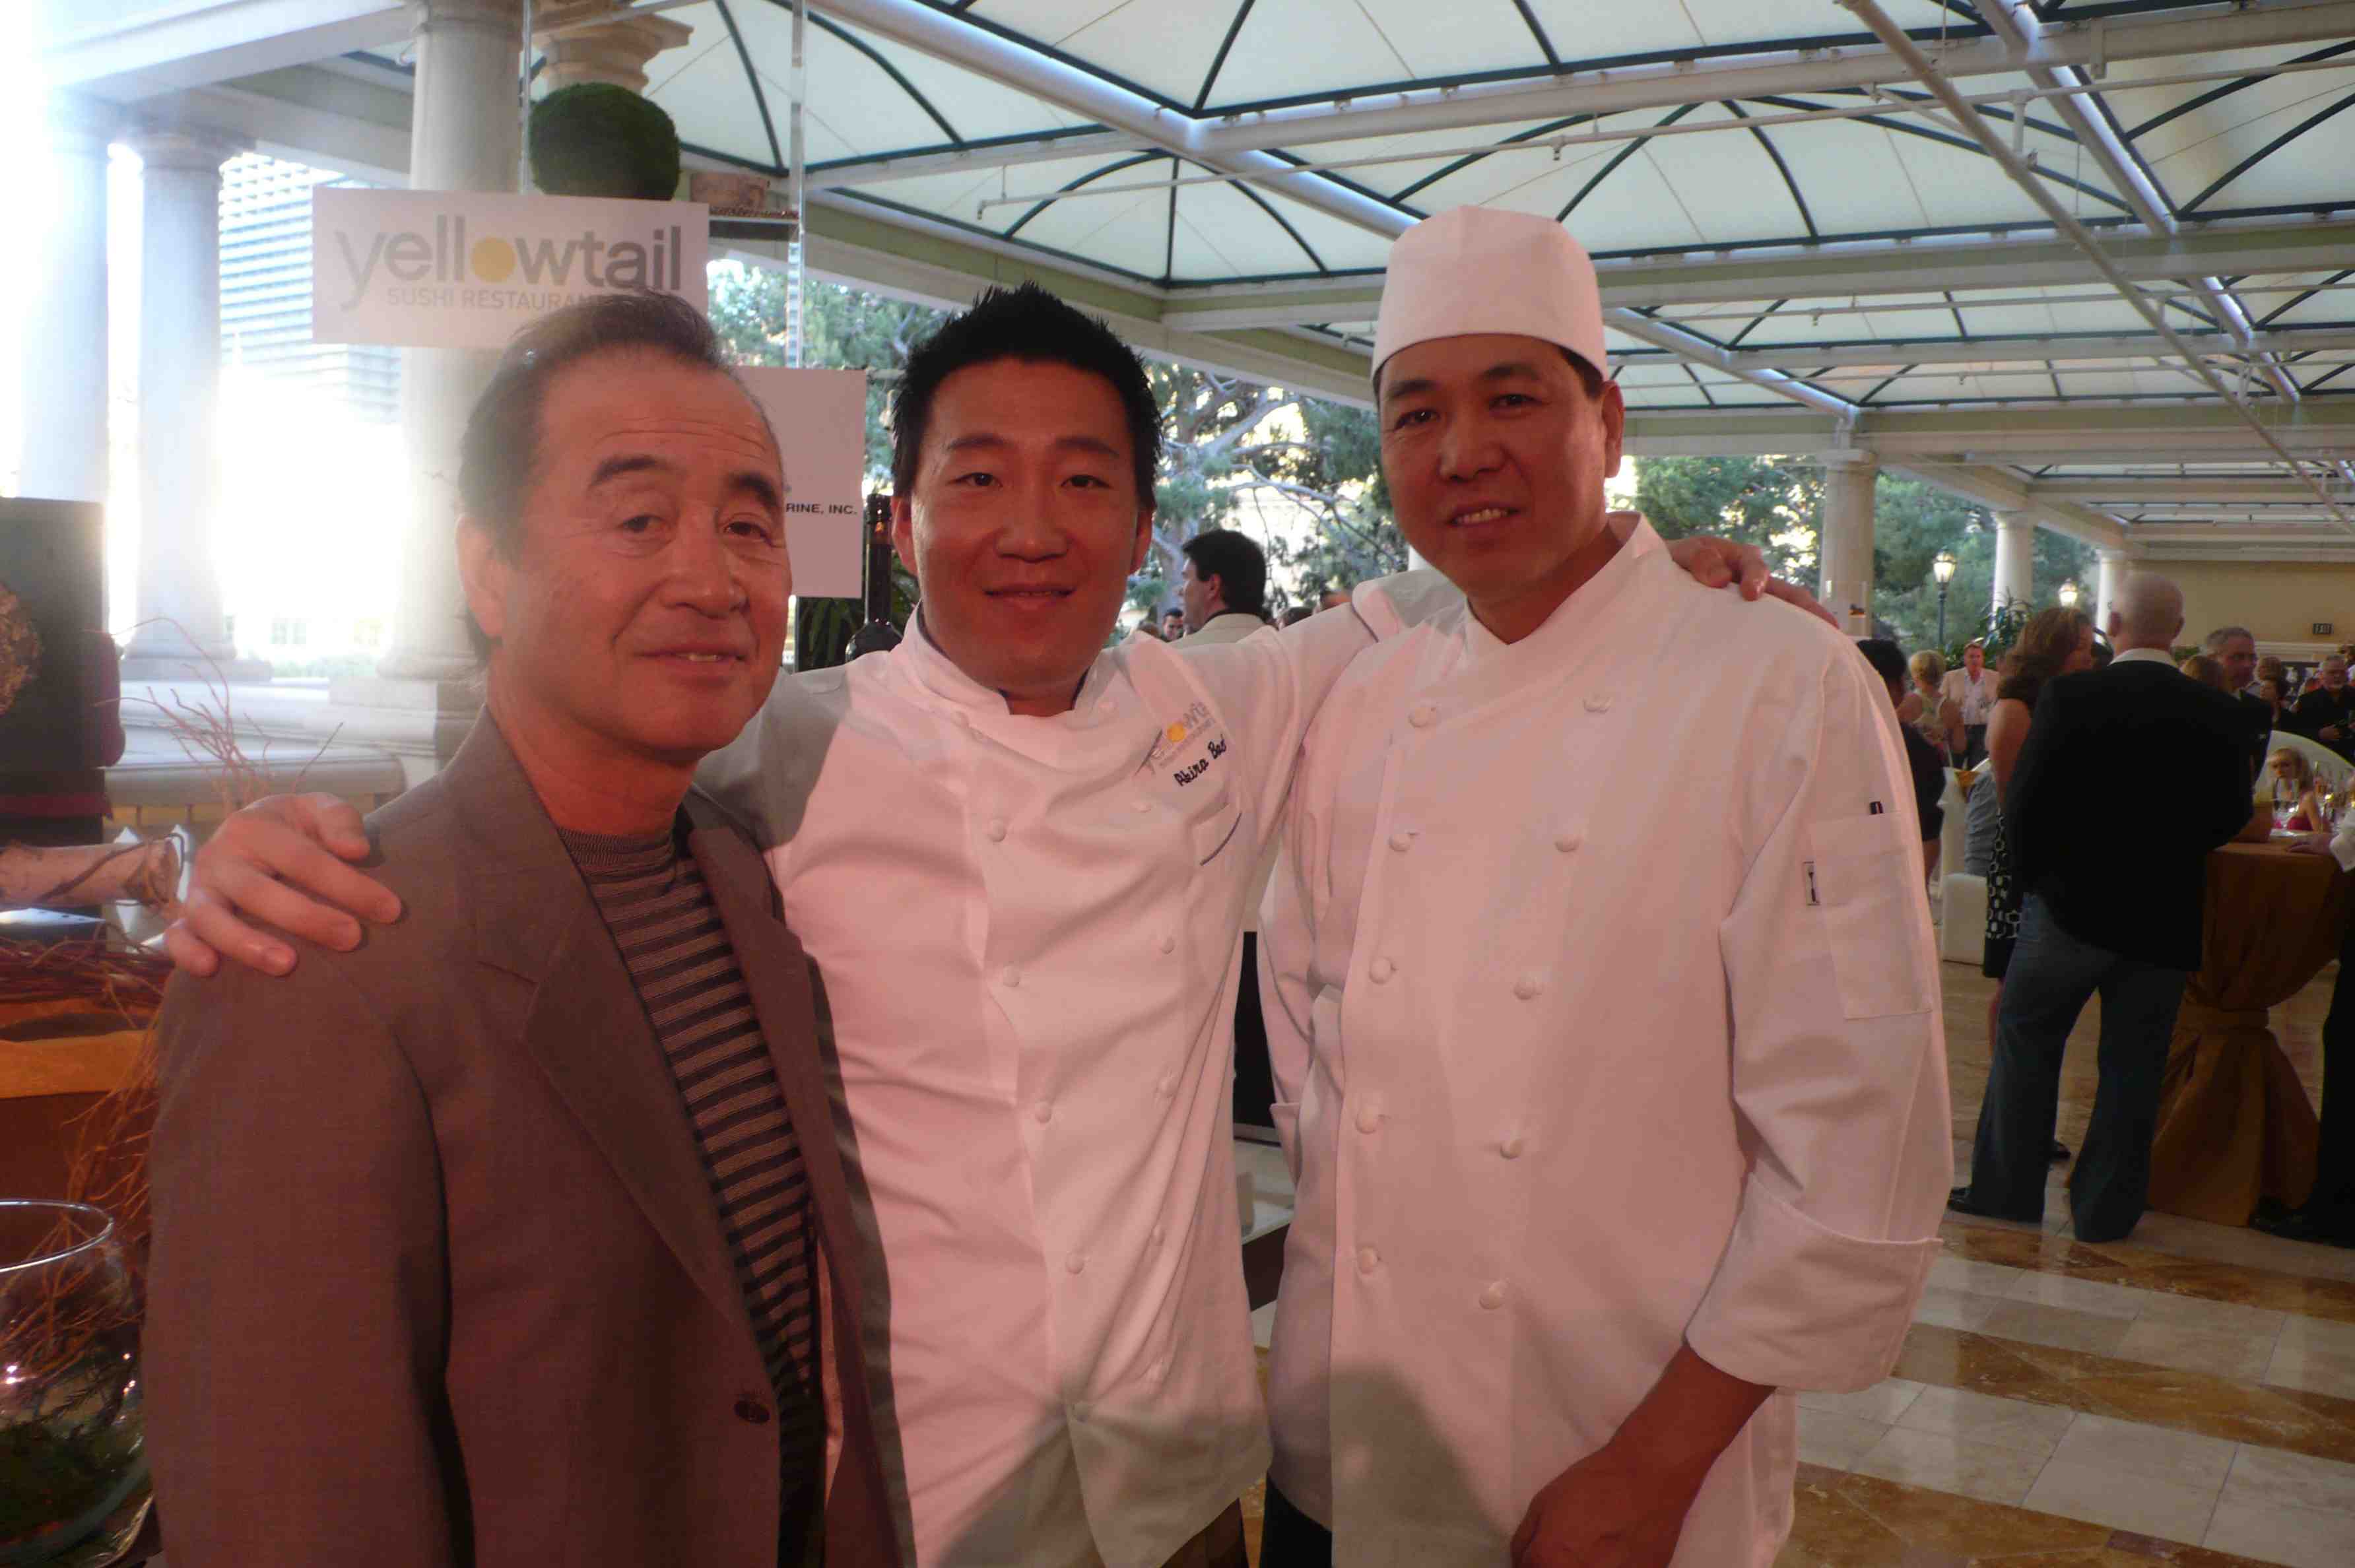 Yellowtail chef Akira Back with staff